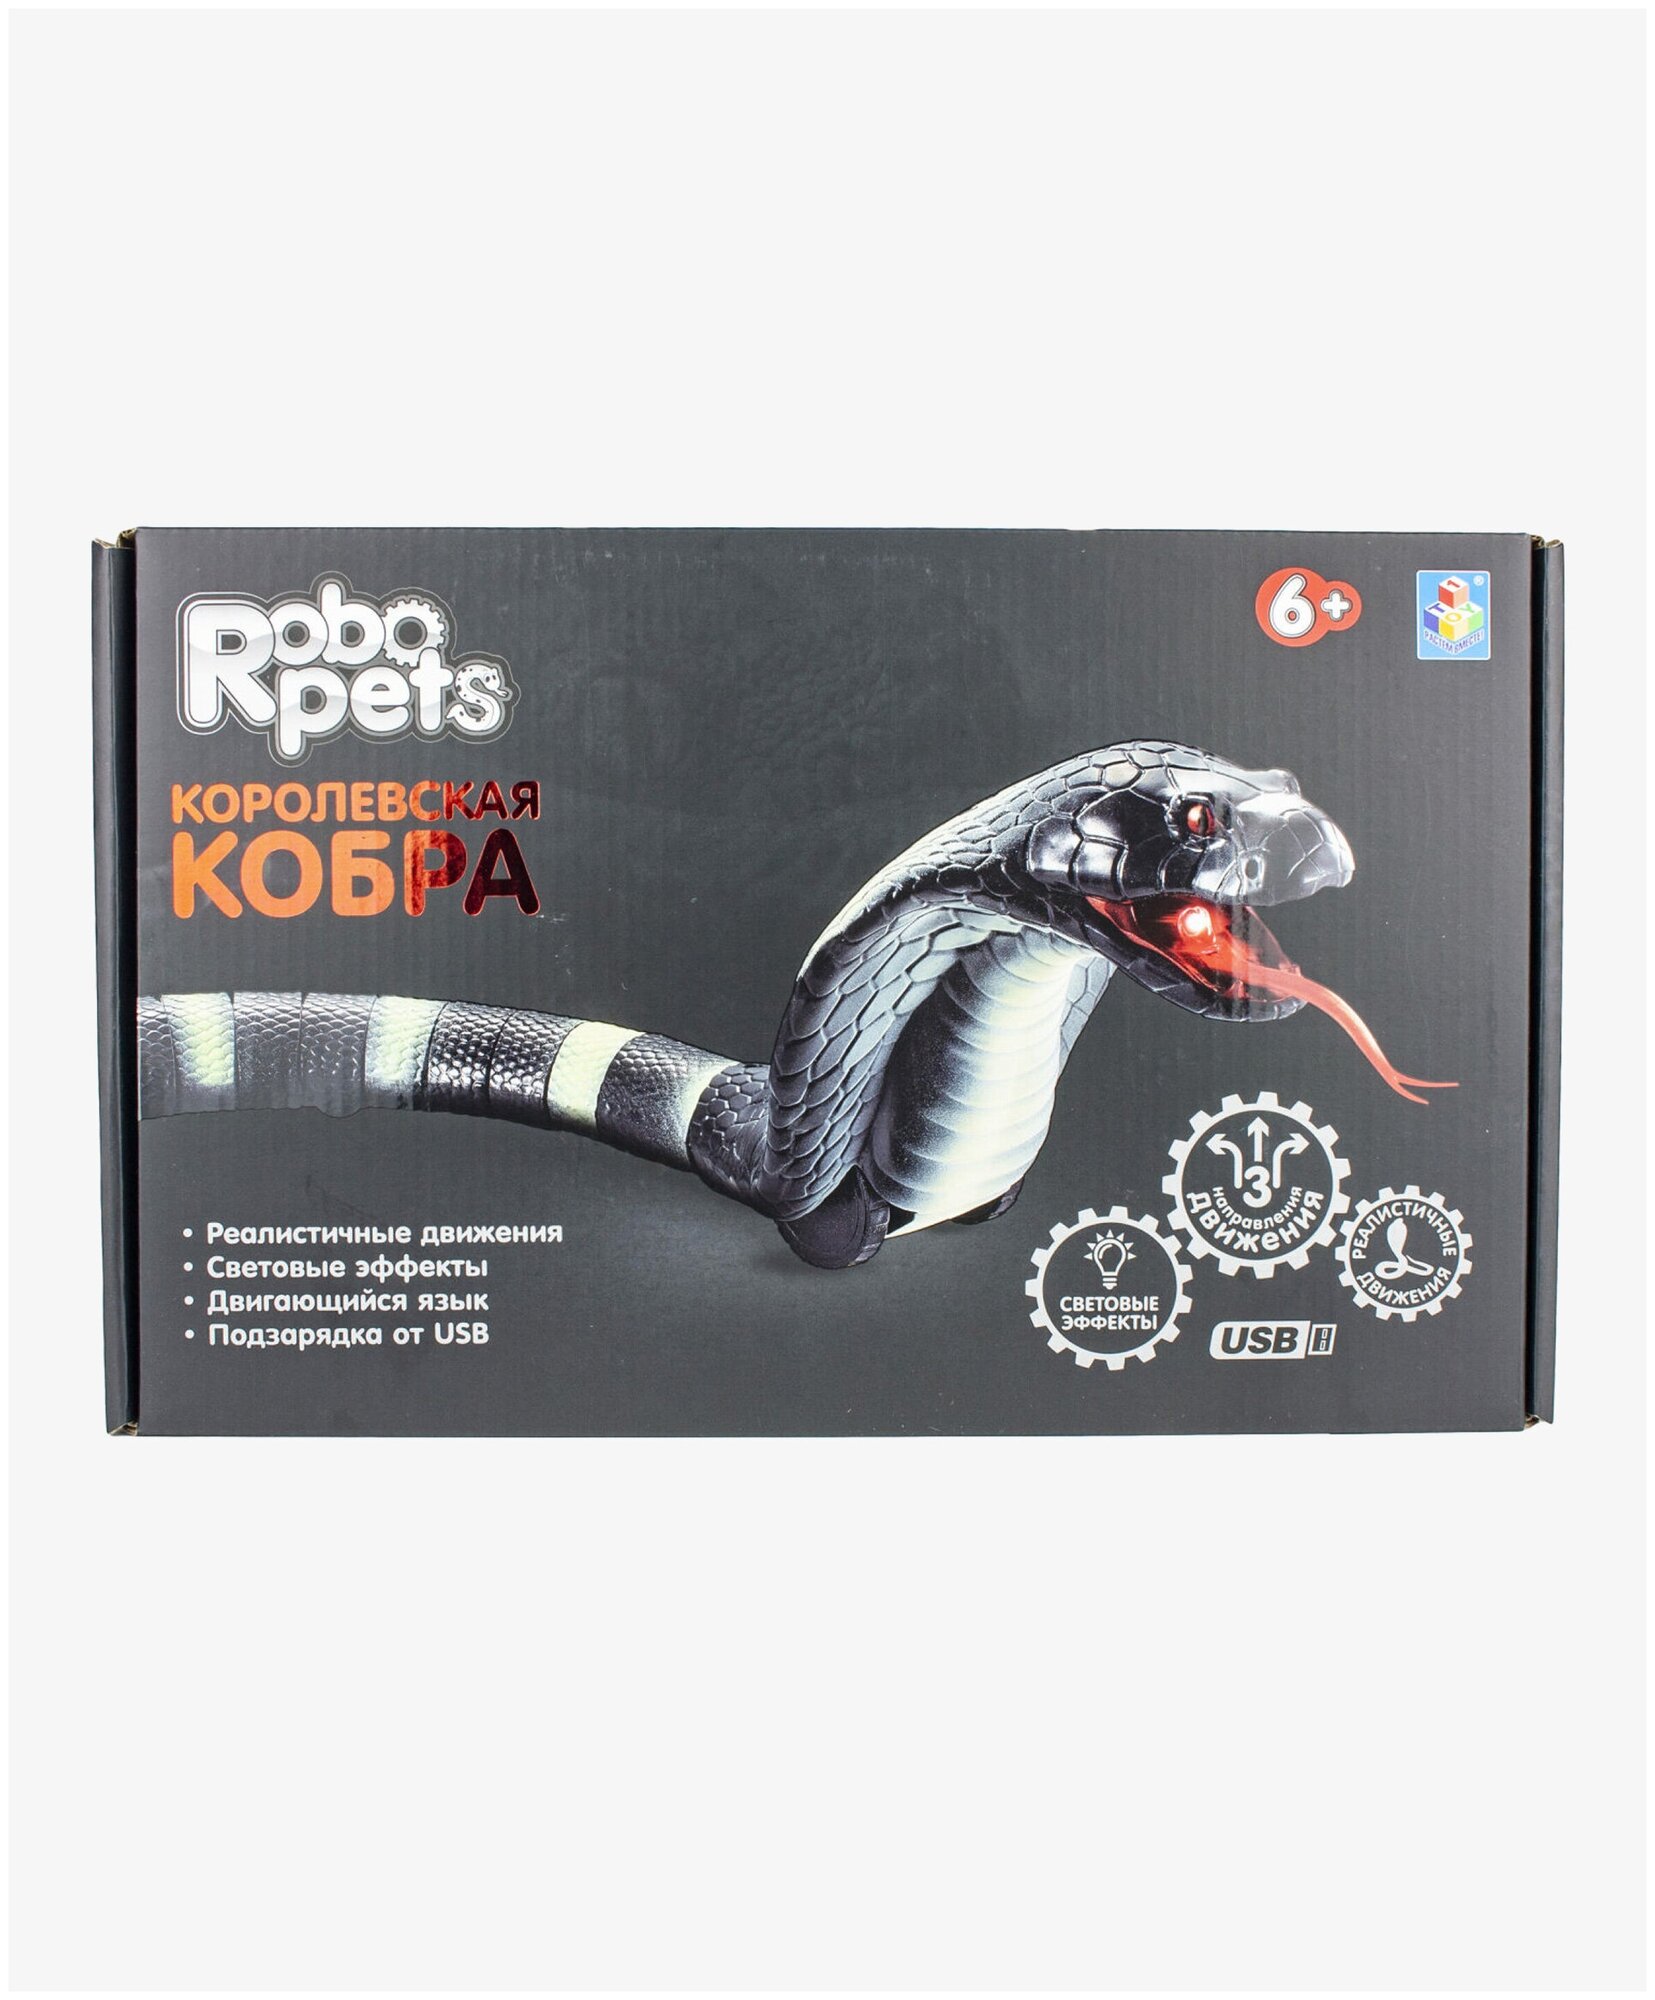 Игрушка на ИК-управлении 1Toy Robopets Королевская кобра, 45 см - фото №16